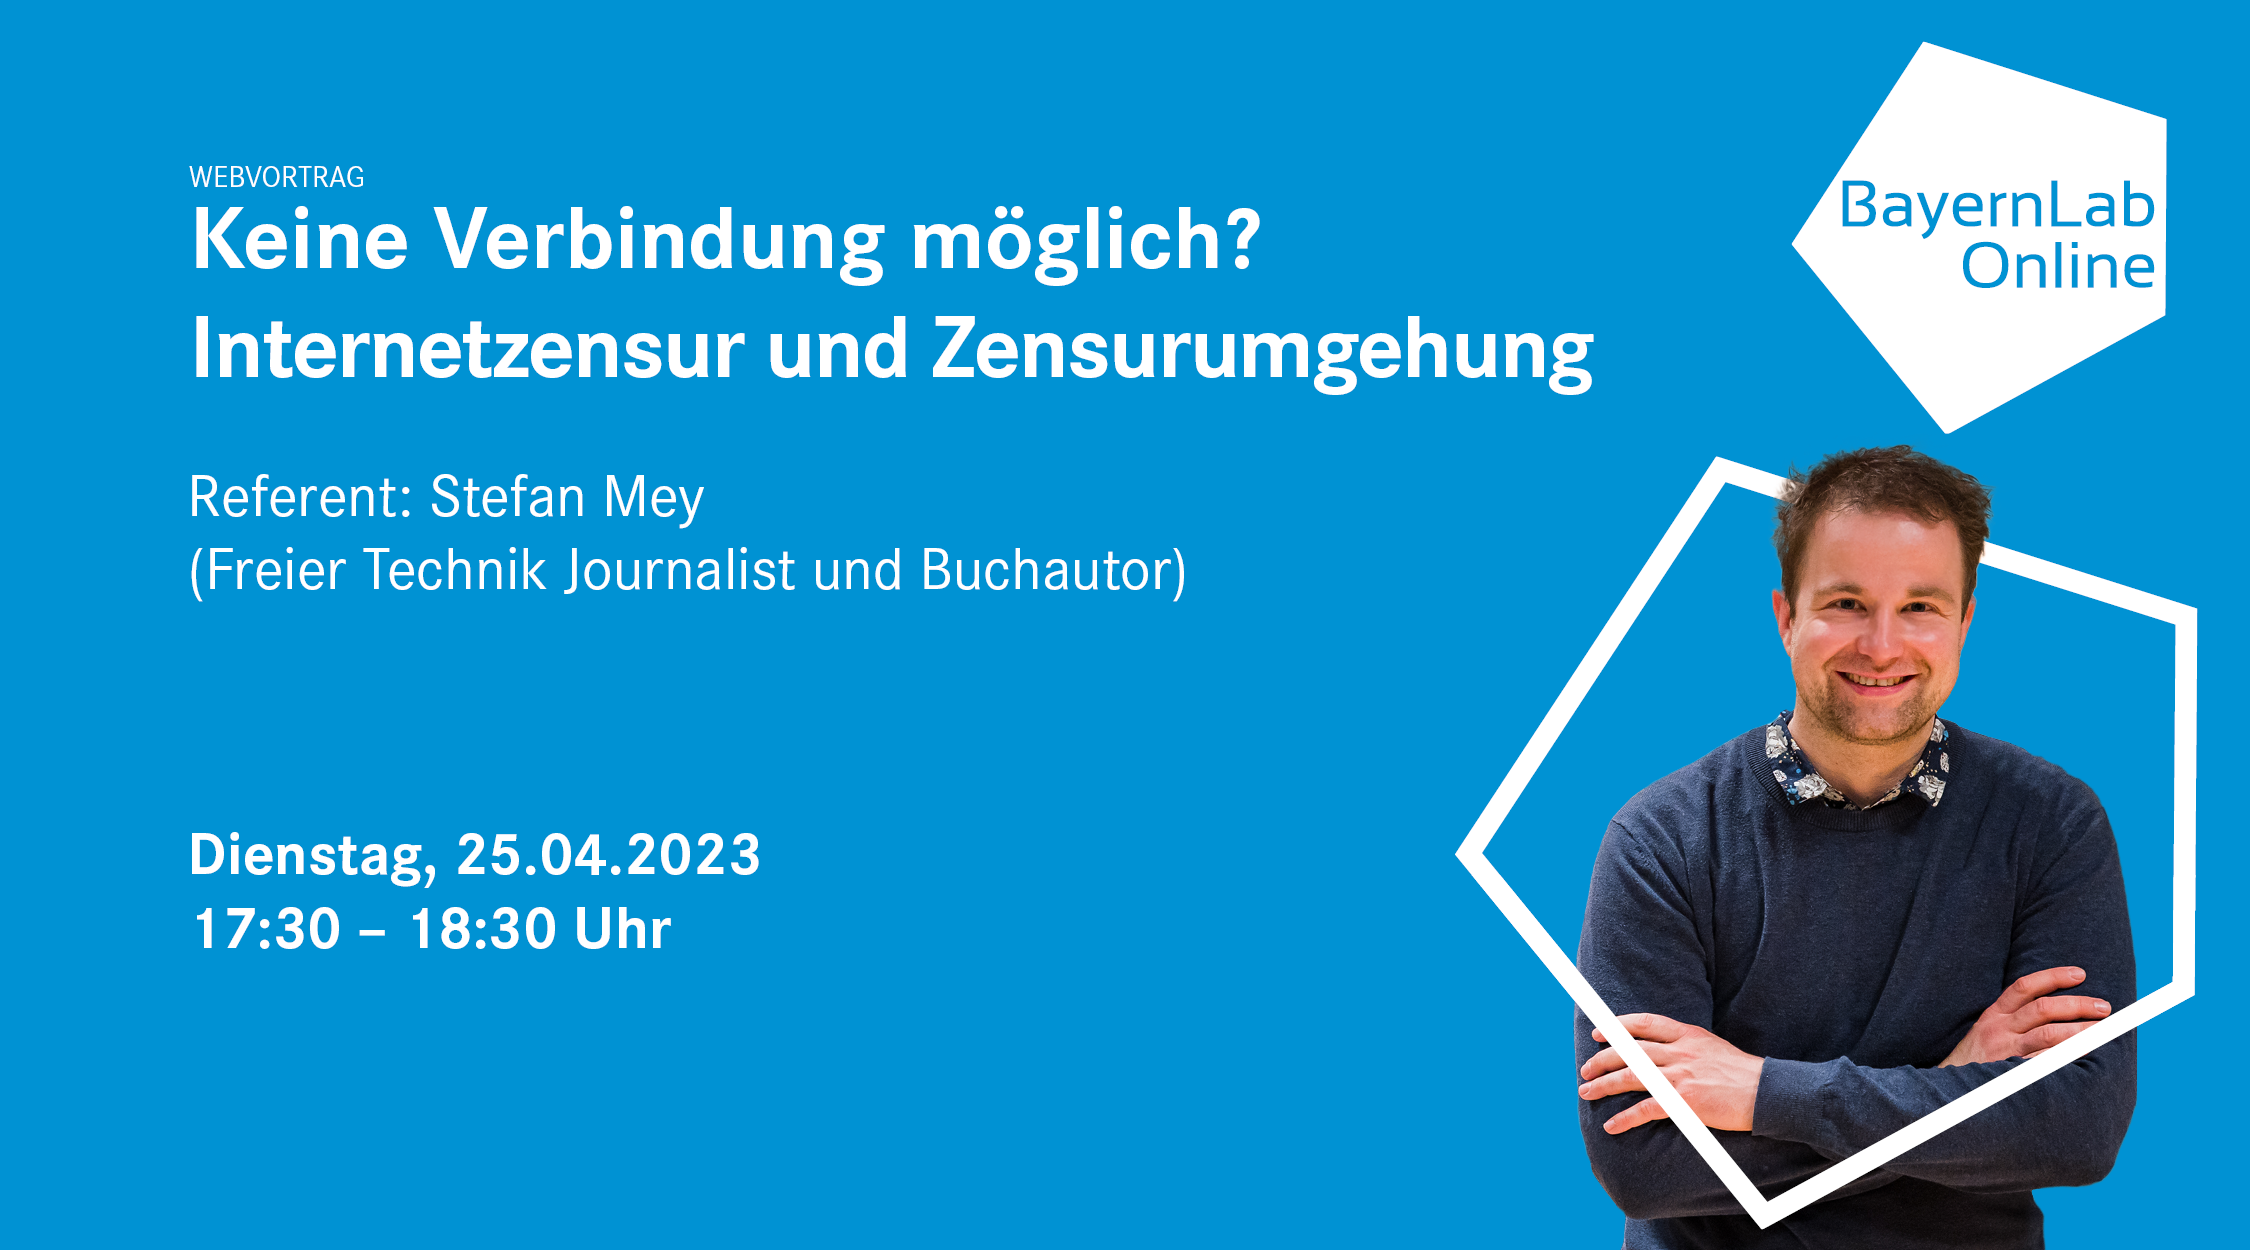 BayernLab Online Vortrag zum Thema Internetzensur und Zensurumgehung des Referenten Stefan Mey am 25.04.2023